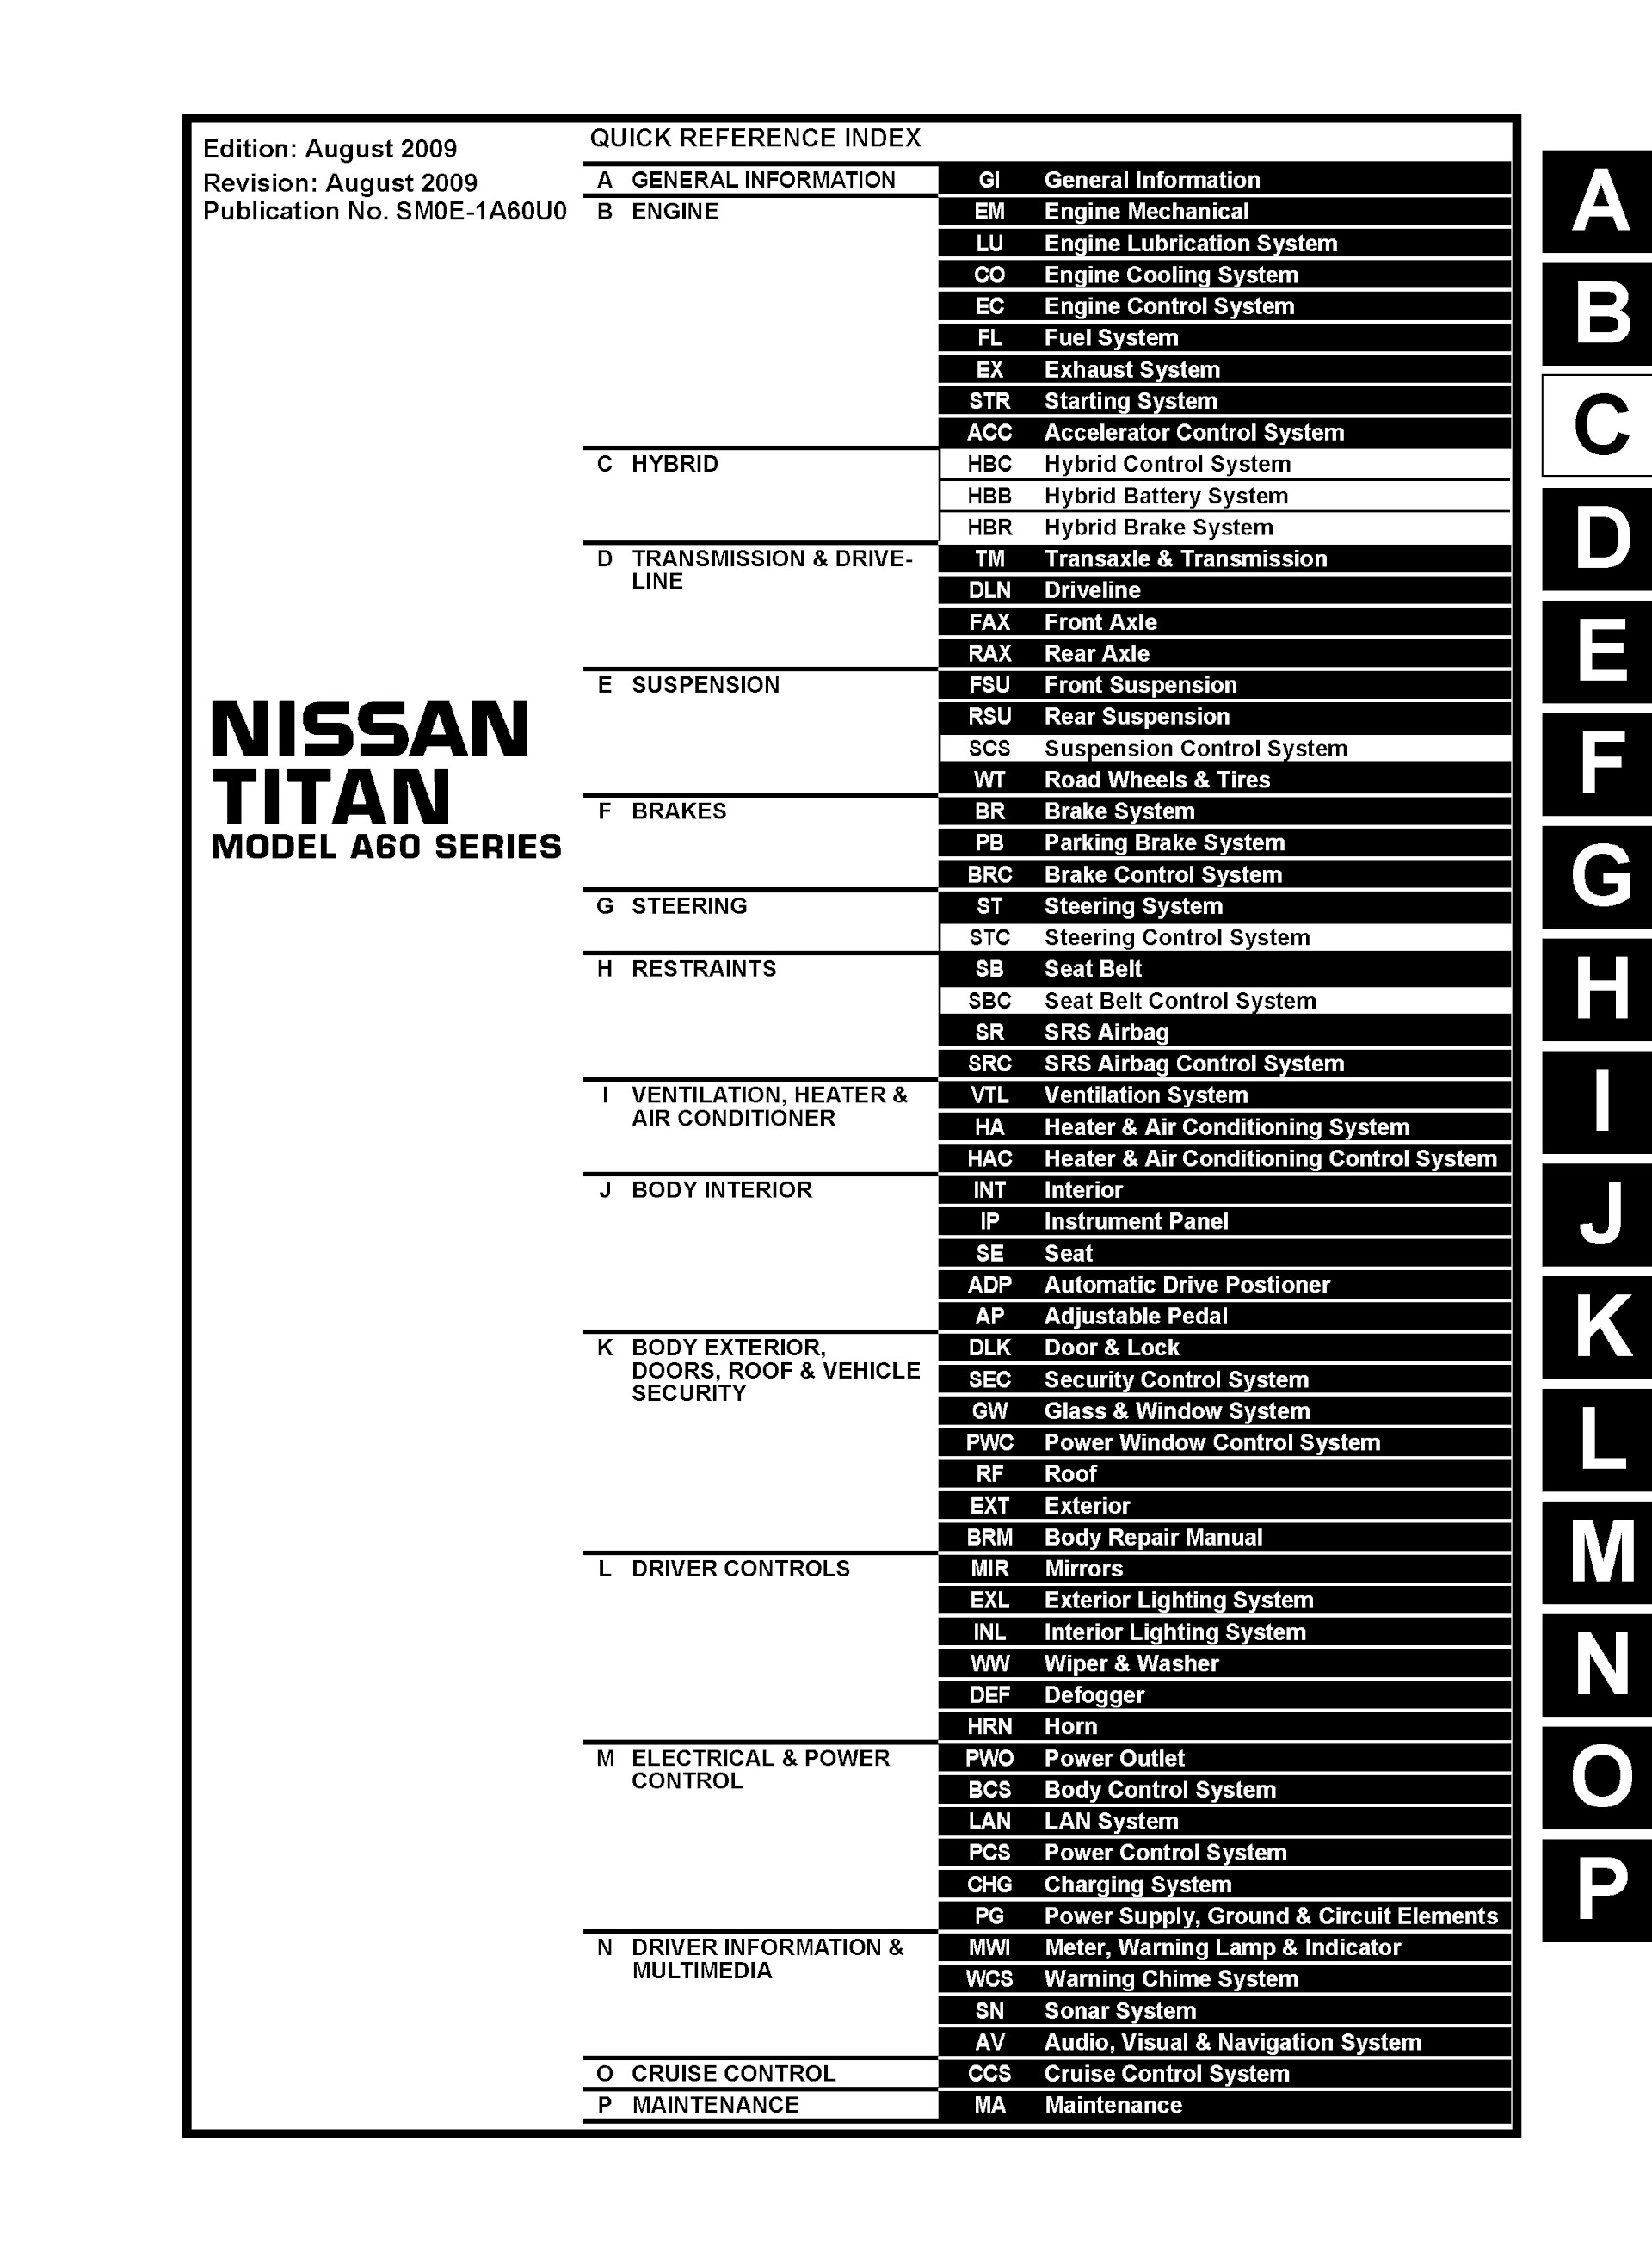 Download 2010 Nissan Titan Repair Manual.